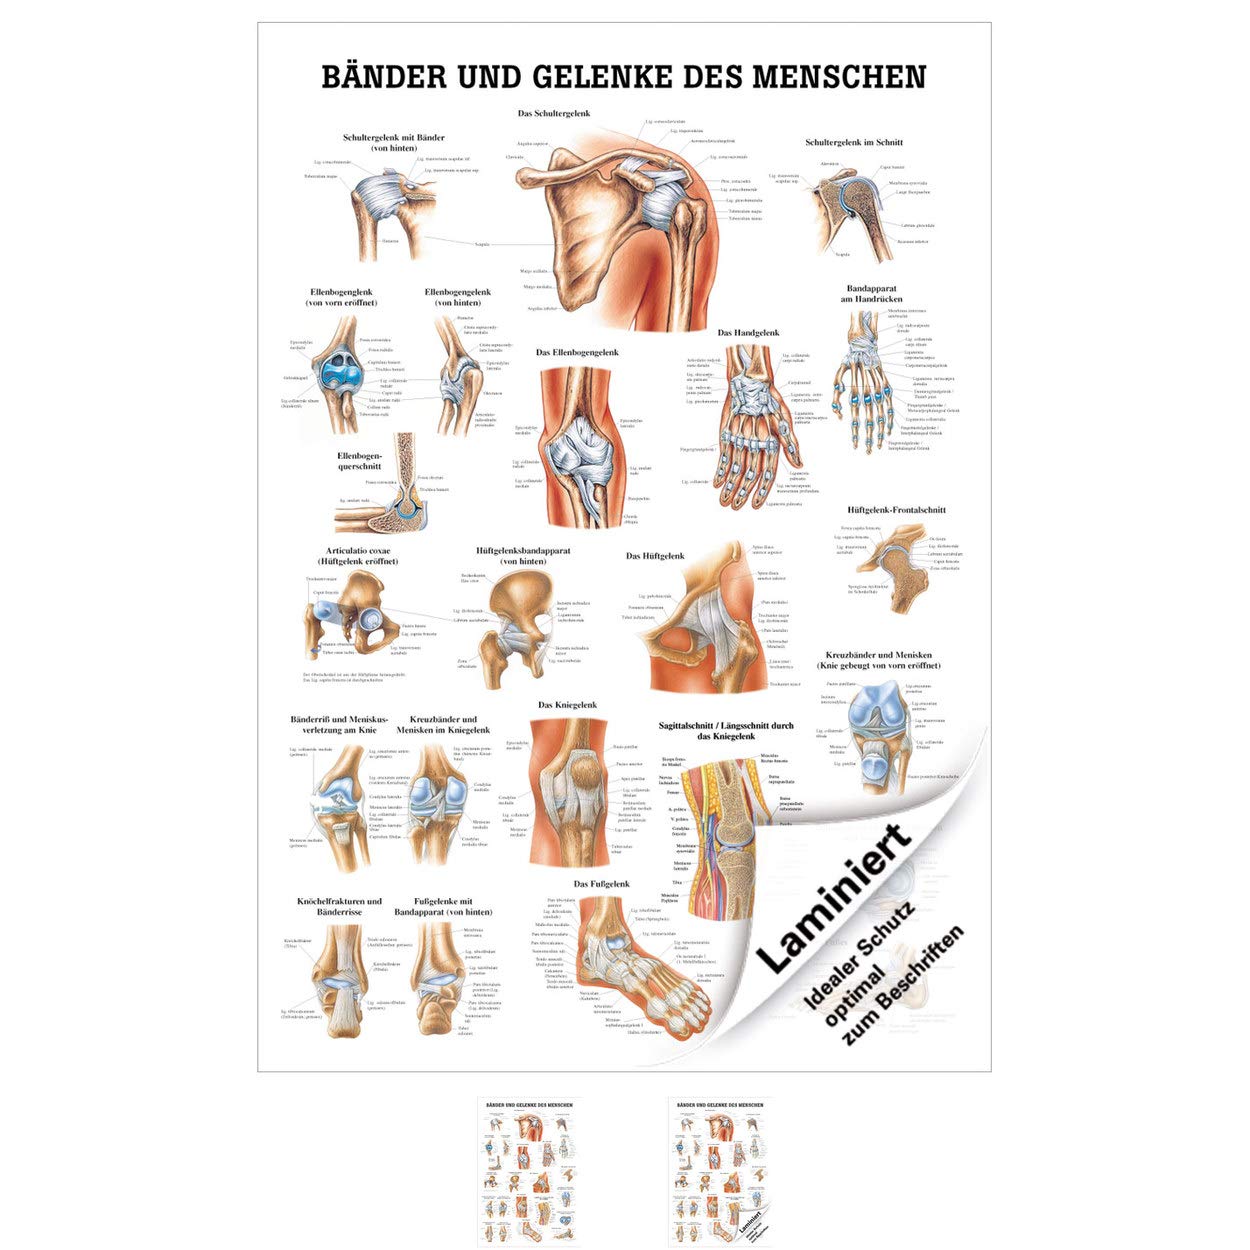 Rüdiger Bänder und Gelenke Lehrtafel Anatomie 100x70 cm medizinische Lehrmittel